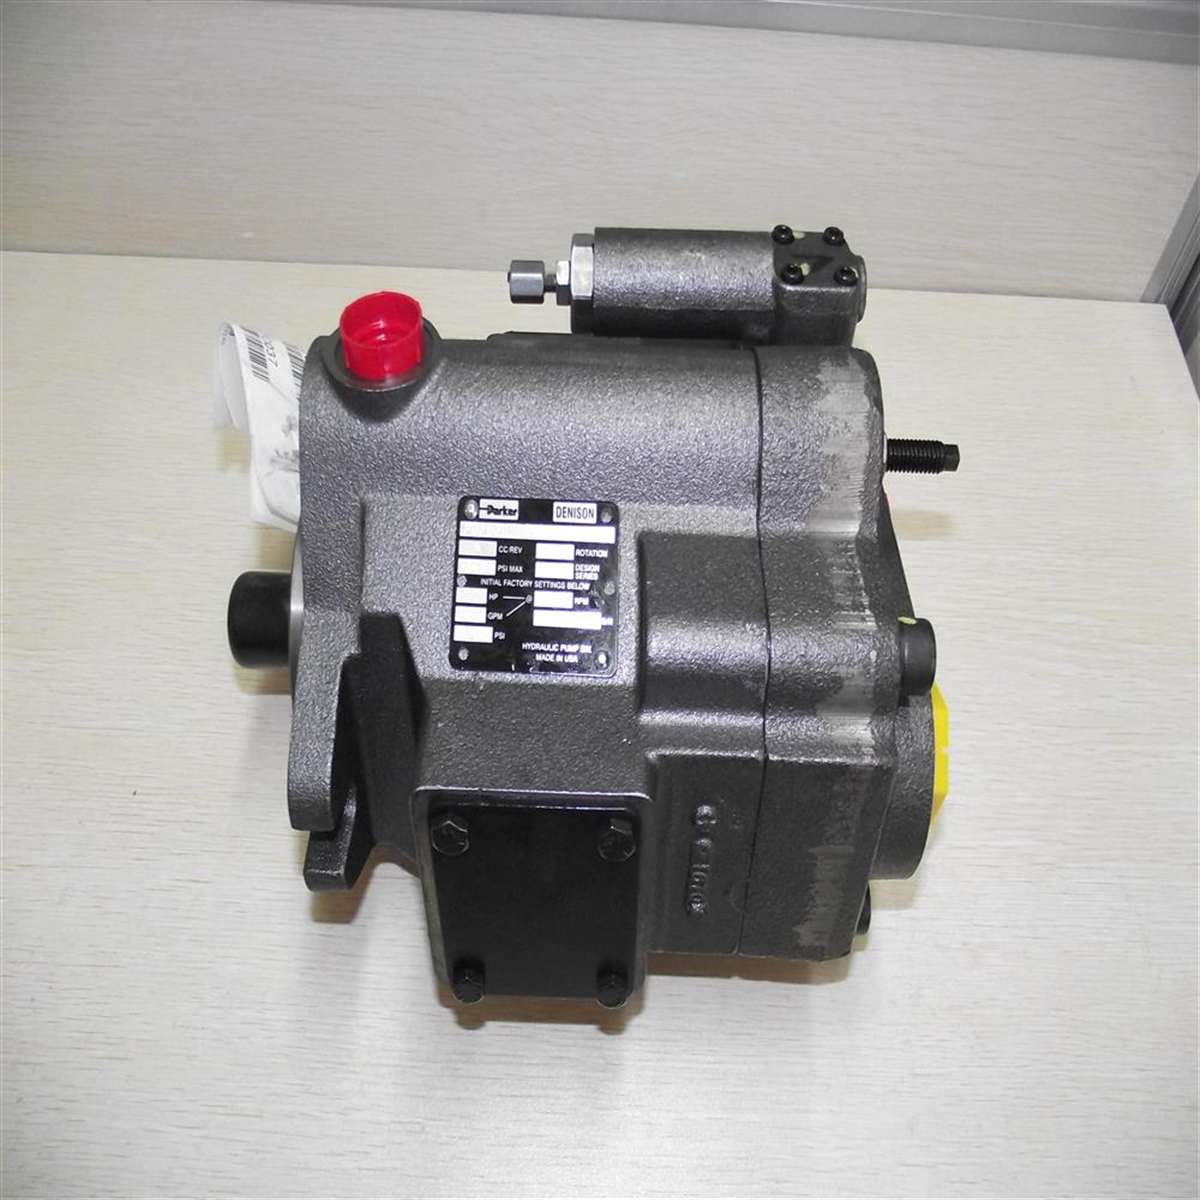 PV152R1EC02 美国派克柱塞泵 13709241158